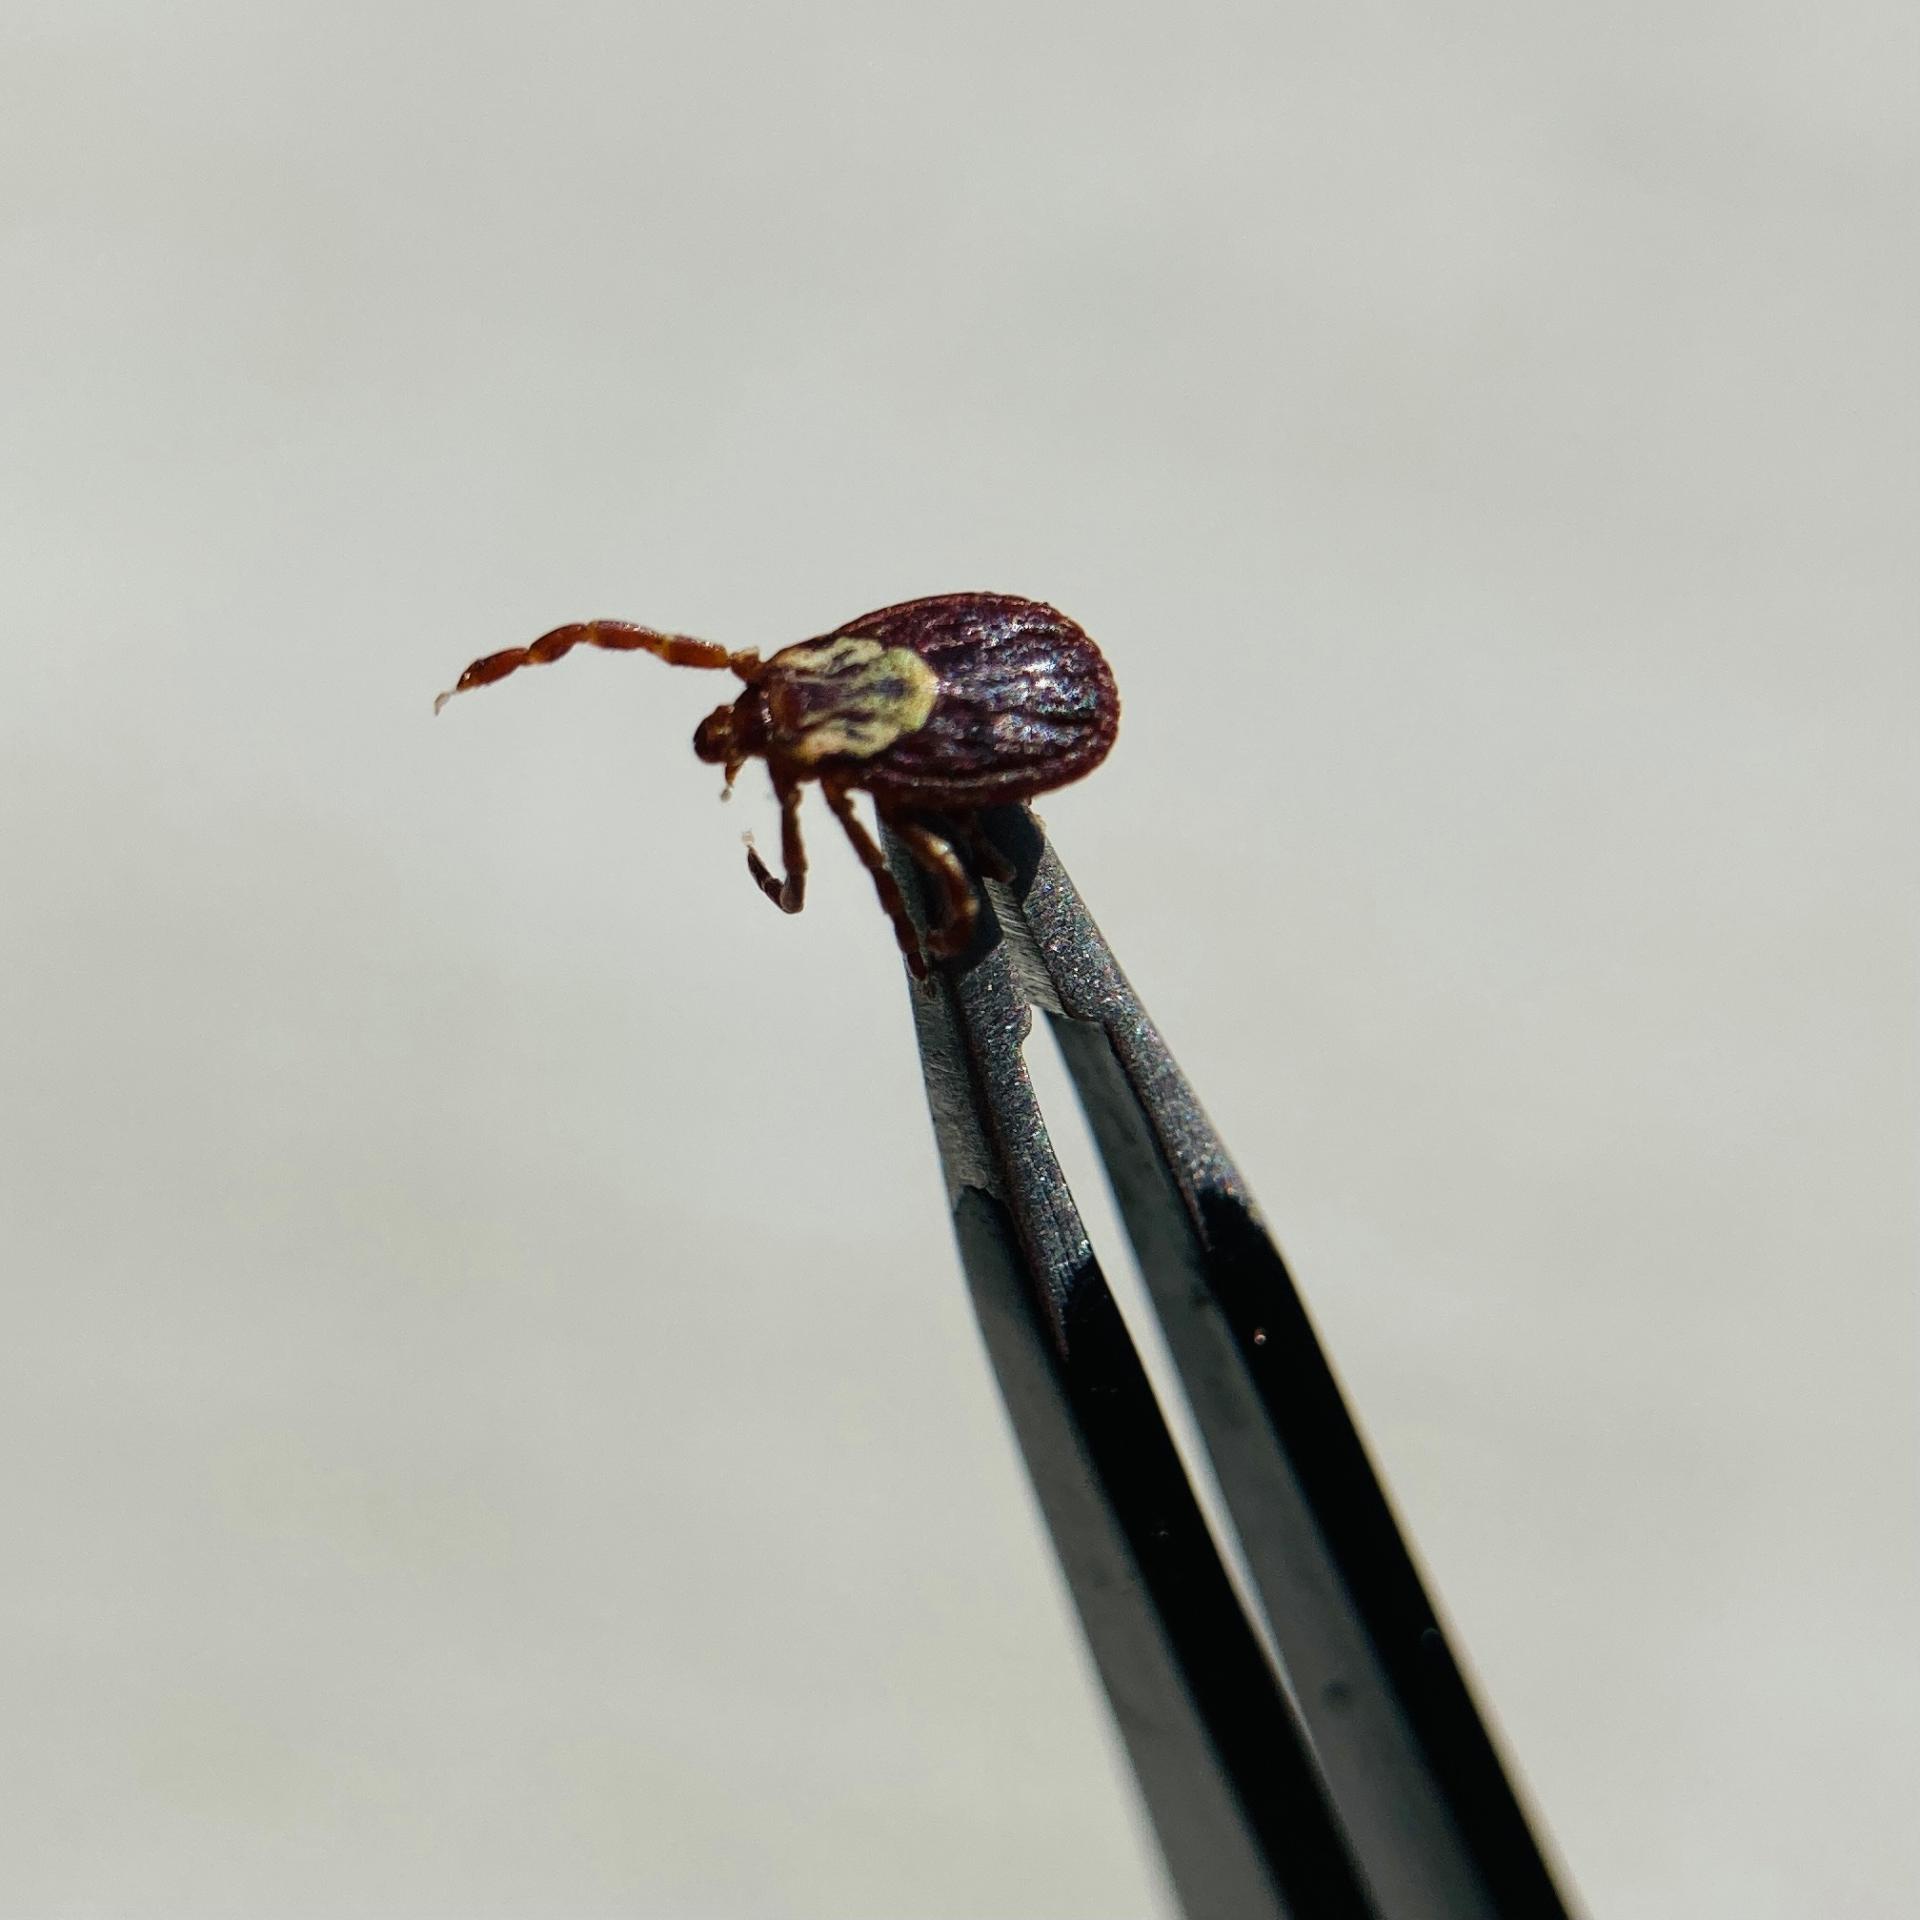 photo of tick being held by tweezers